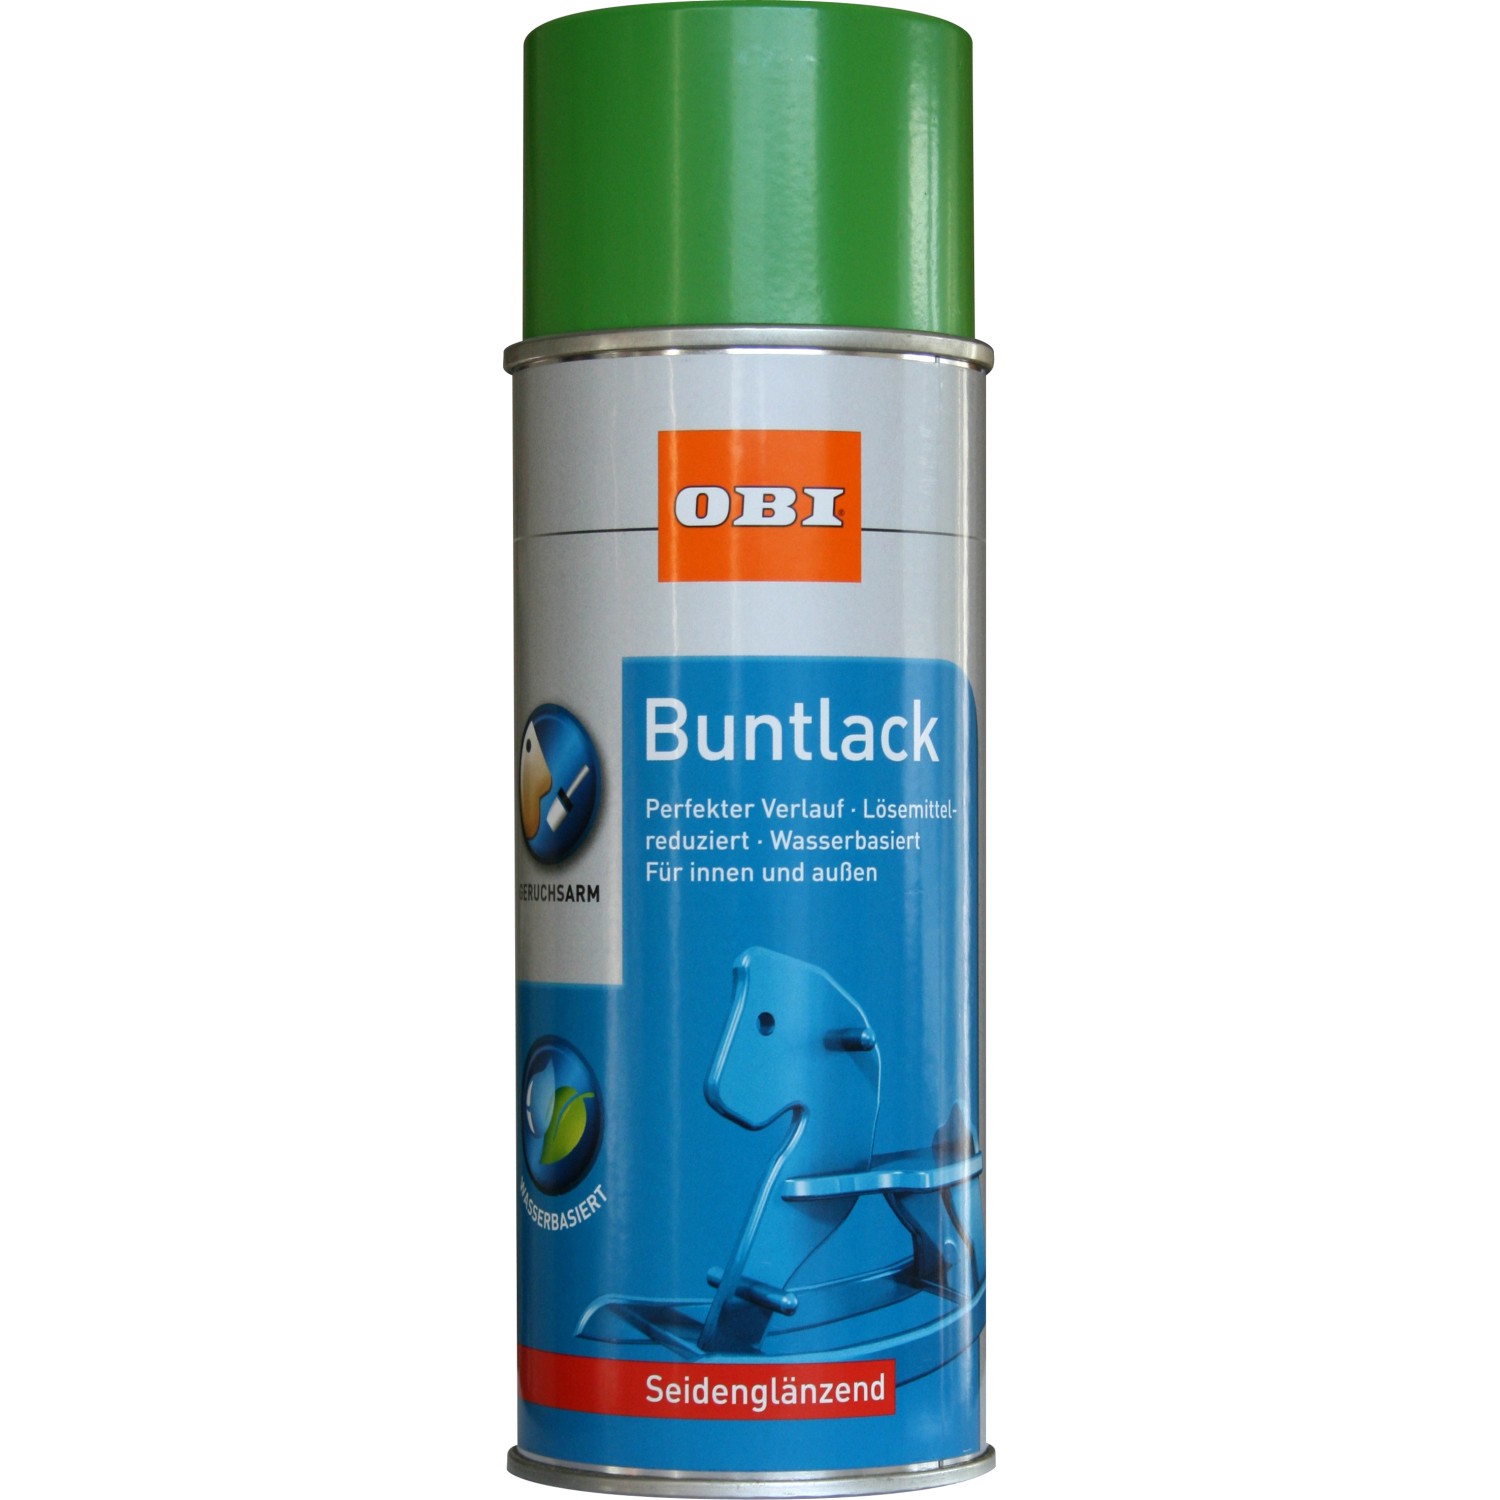 OBI Buntlack Spray RAL 6018 Gelbgrün seidenglänzend wv 400 ml von OBI